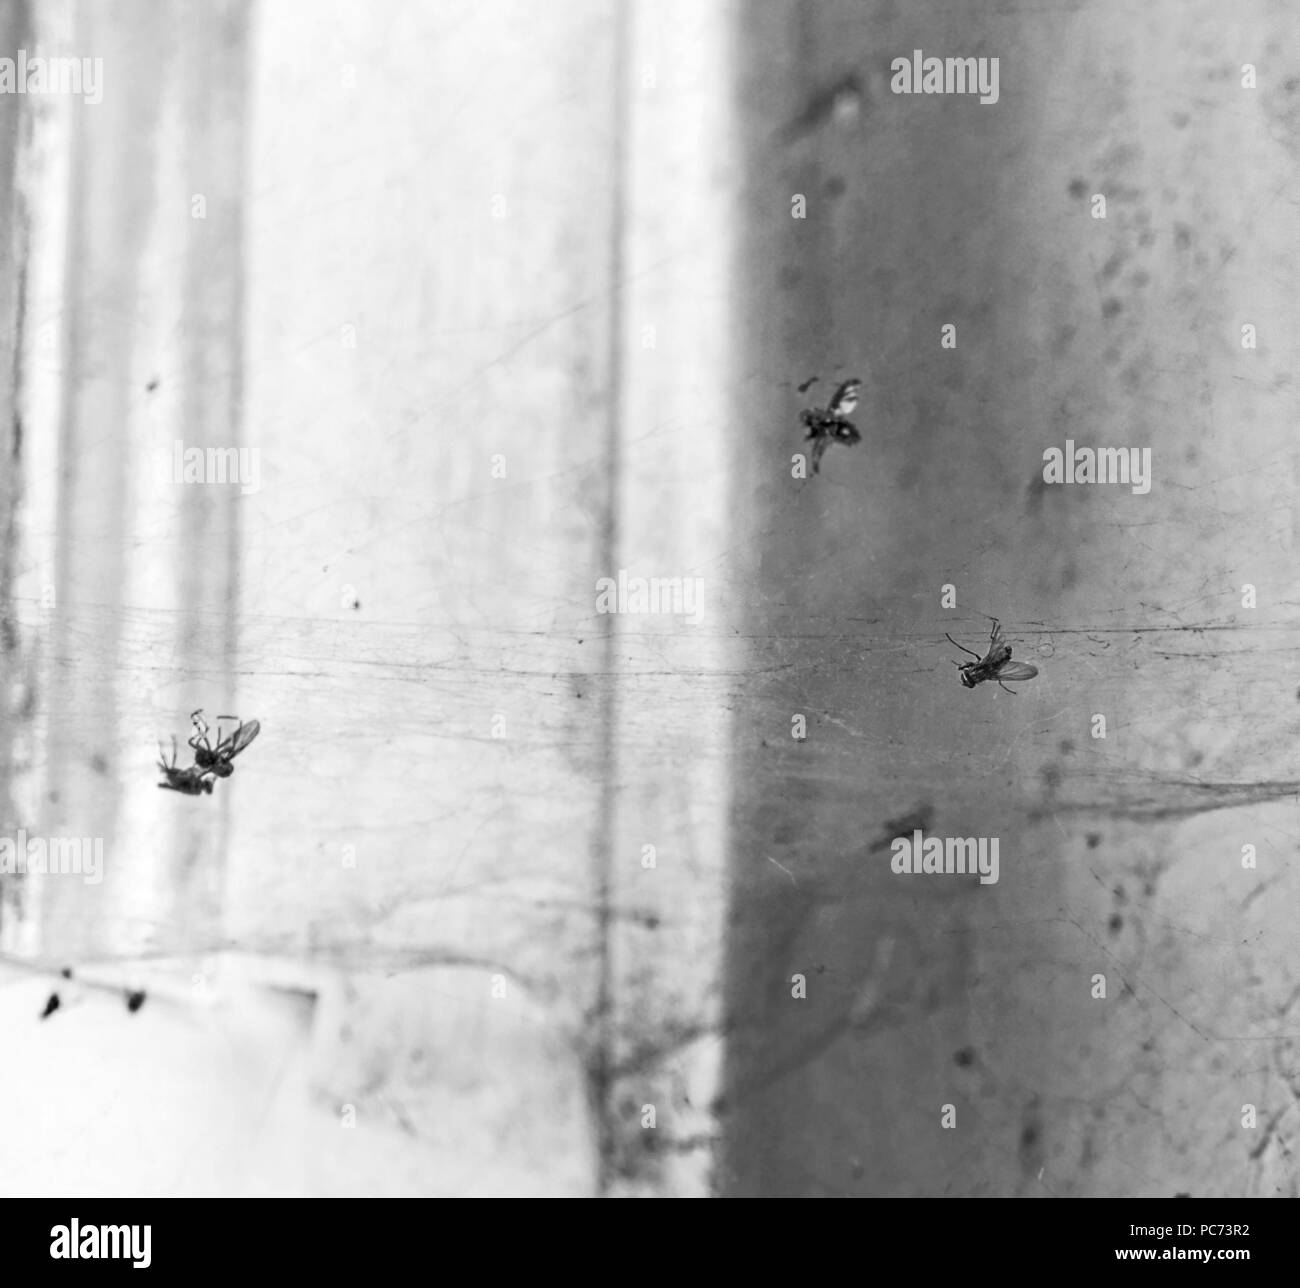 Tote Fliegen im Web in alte schmutzige Zimmer in Schwarz und Weiß Stockfoto